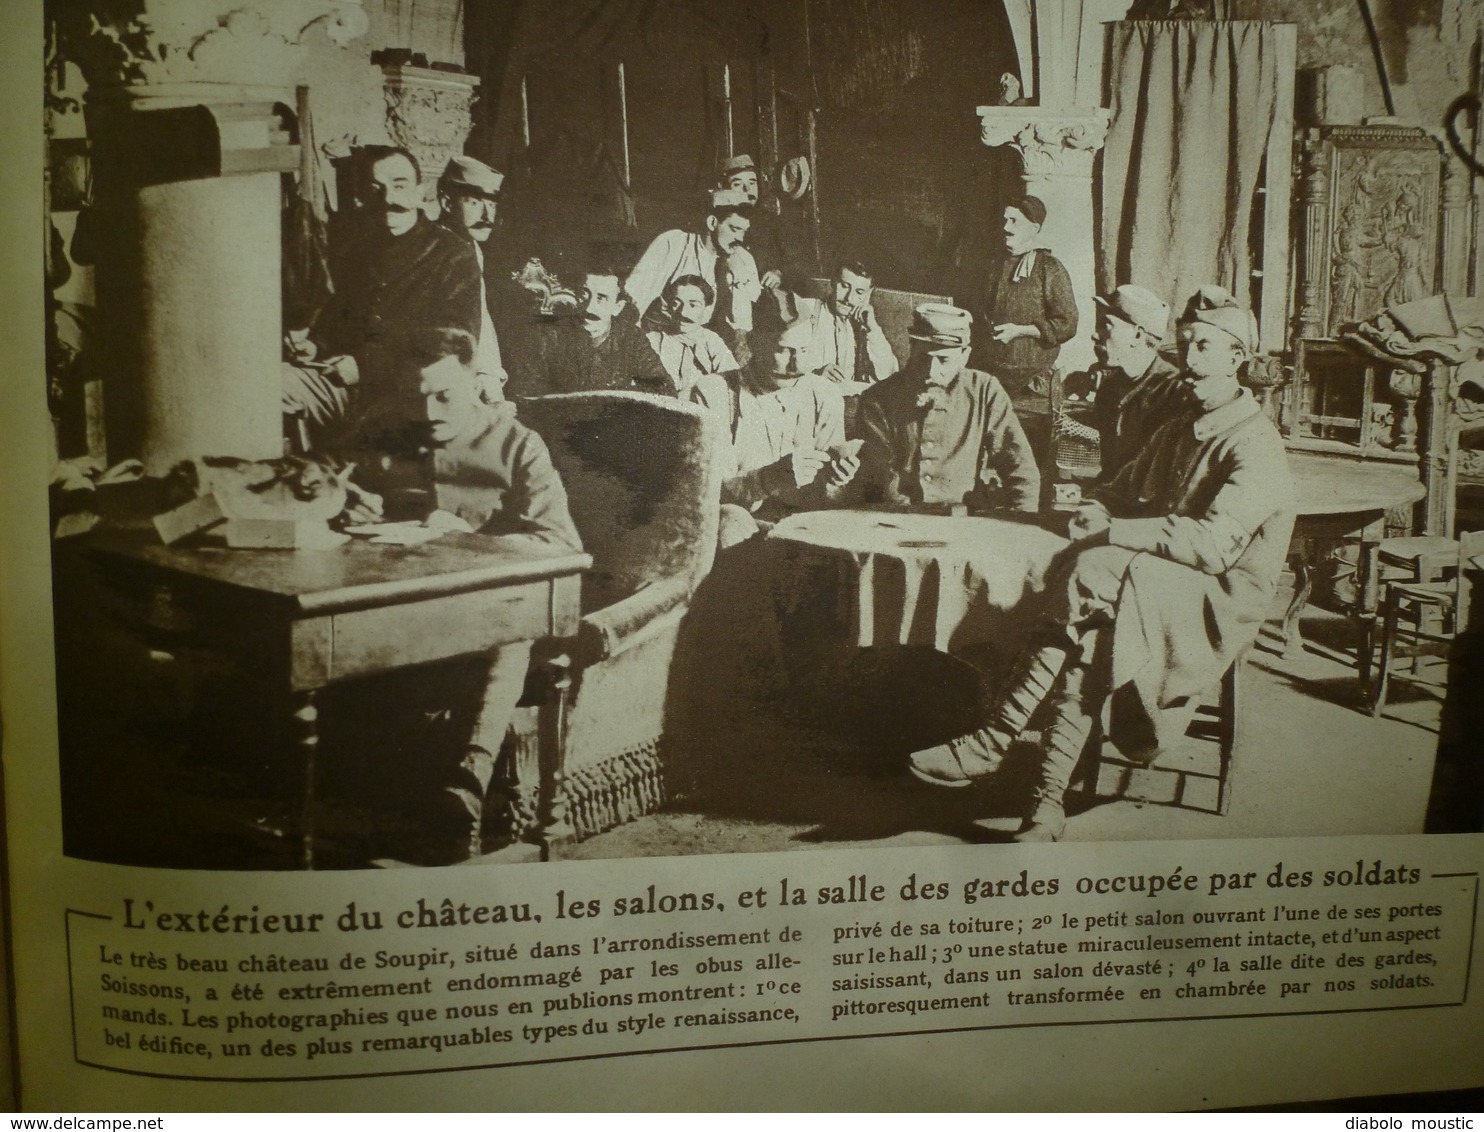 1915 LE MIROIR:Elisabeth sur front belge;Grandes figures de la crise balkanique;Battage du blé;Château de Soupir; etc